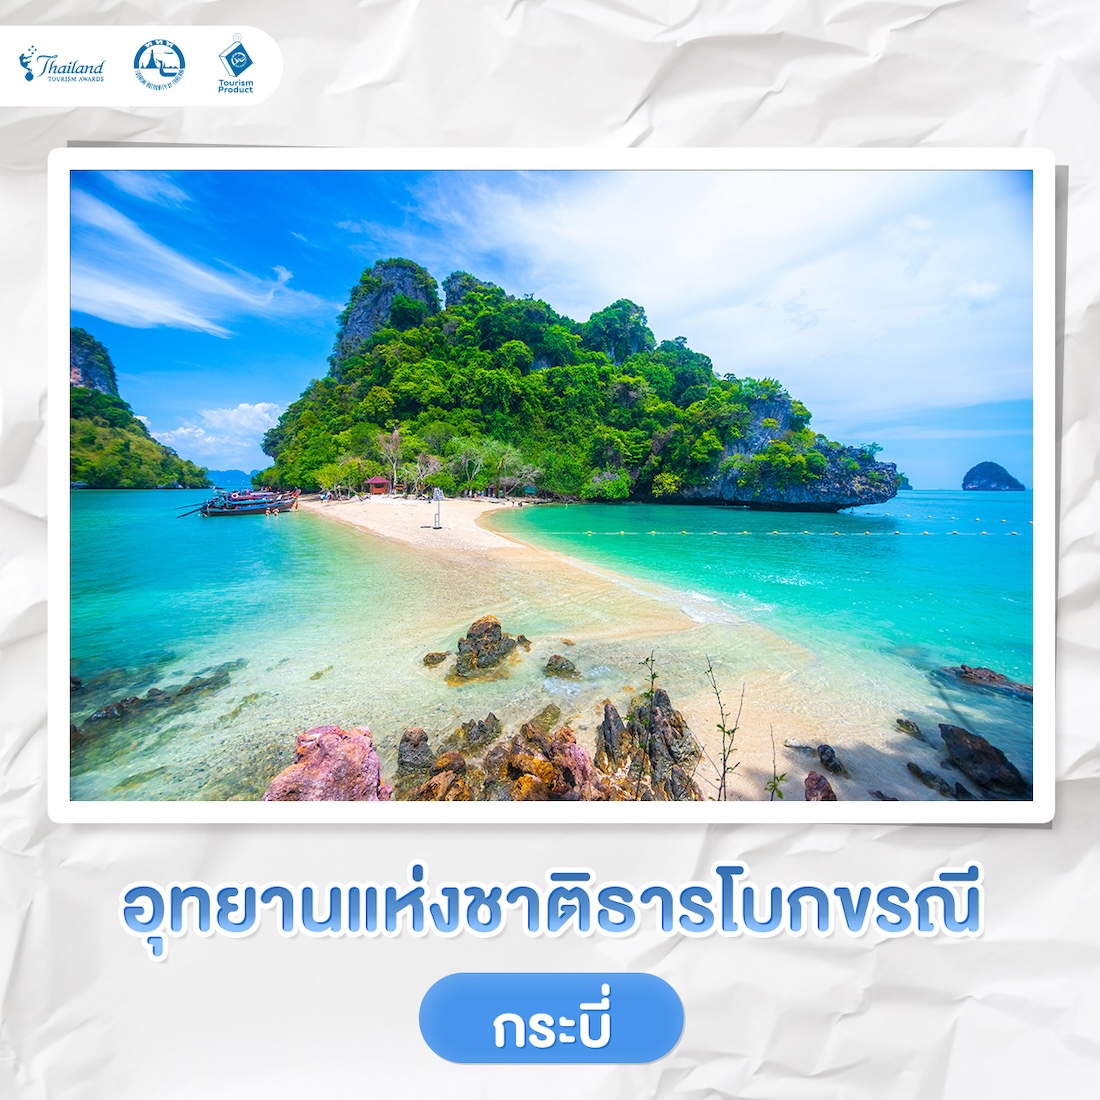 5 แลนด์มาร์ค เที่ยวเปิดประสบการณ์ใหม่ รางวัล Thailand Tourism Awards อุทยานแห่งชาติธารโบกขรณี จ.กระบี่